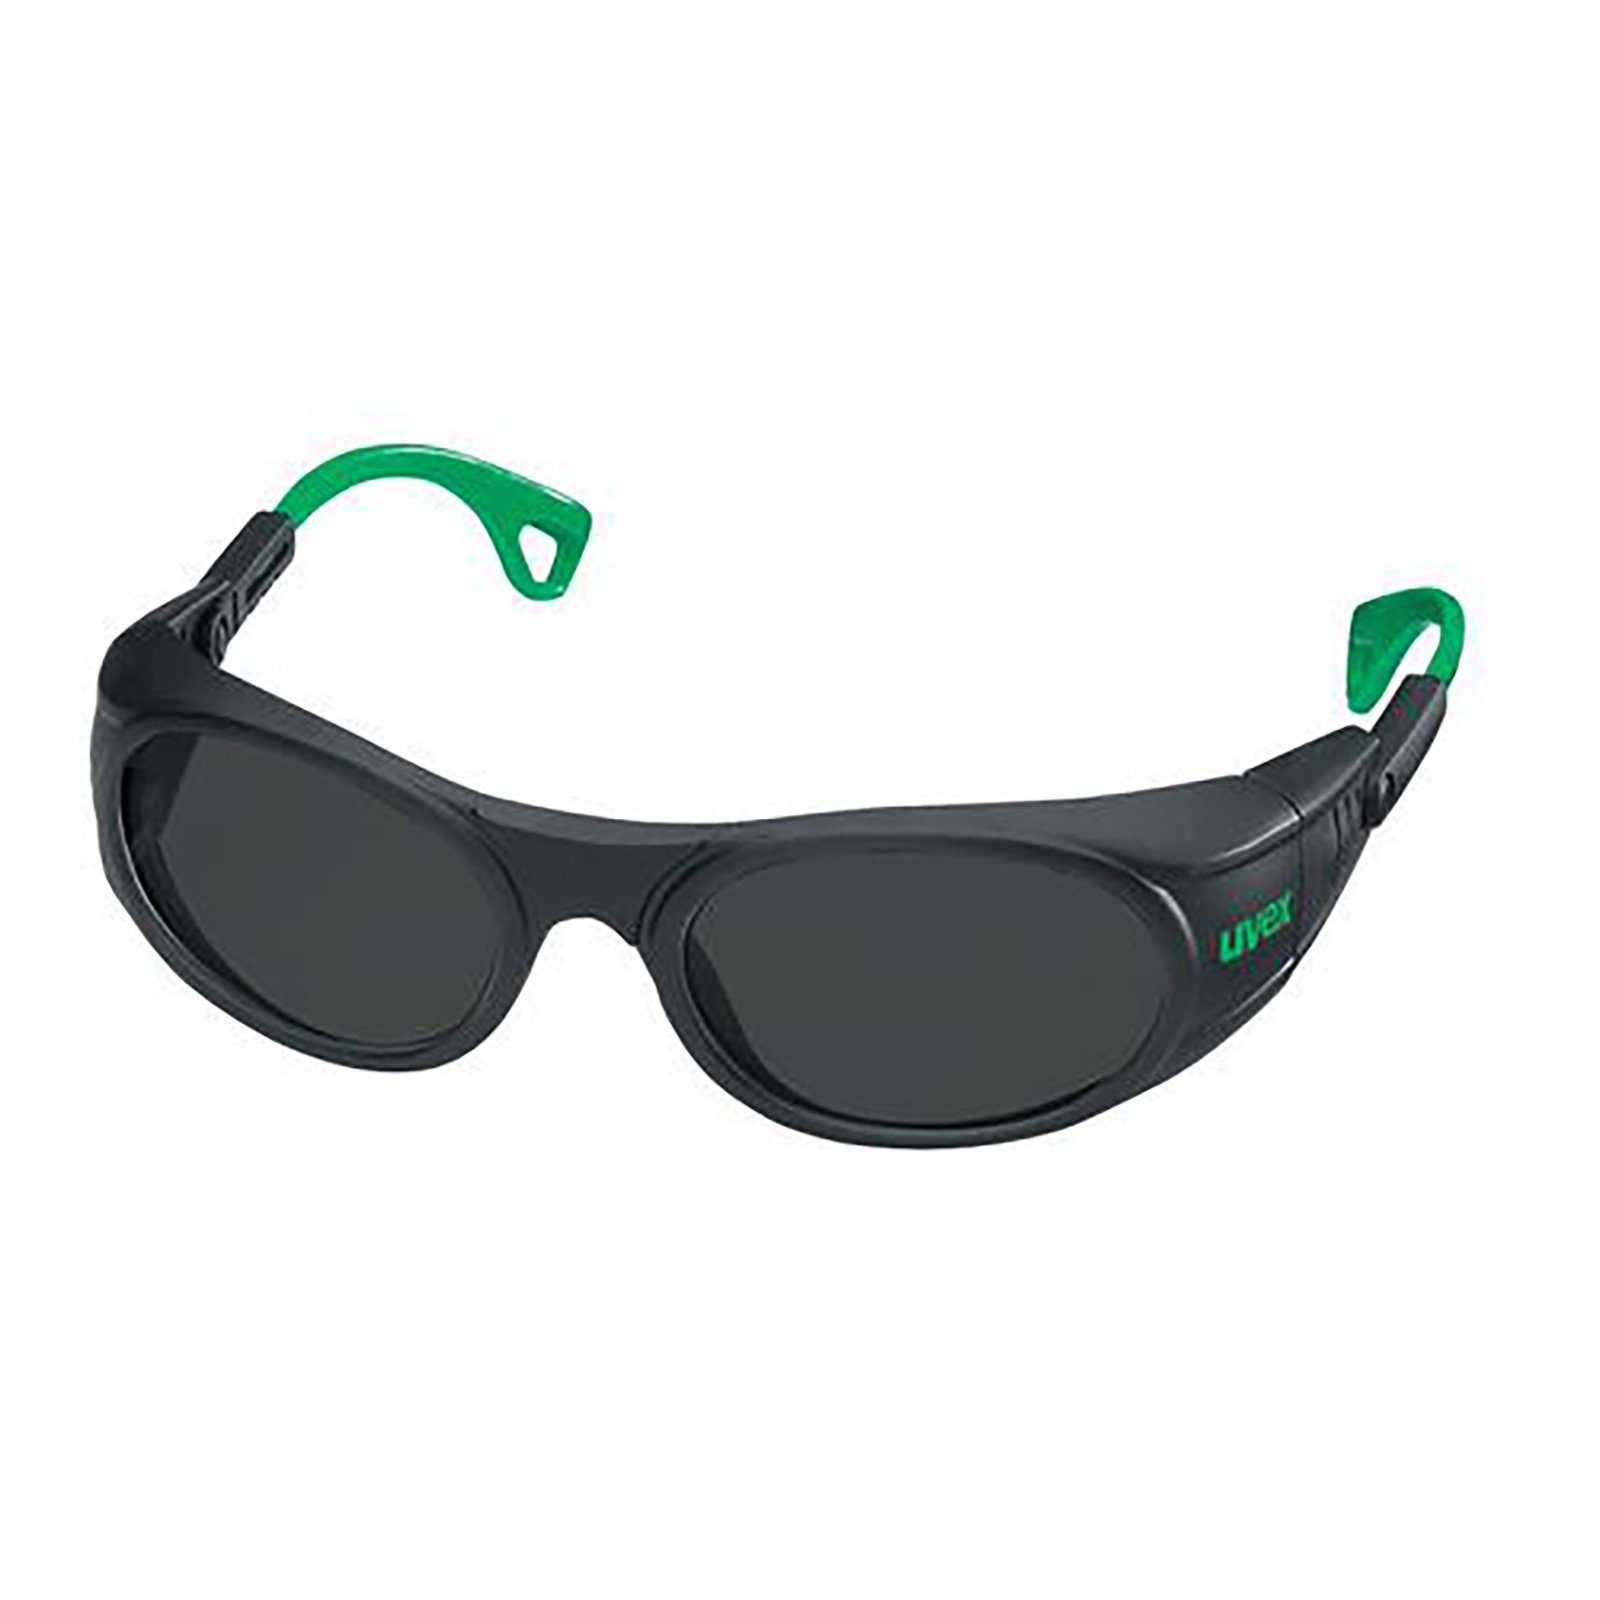 Uvex Arbeitsschutzbrille Bügelbrille 9116 grau 5 infradur Schweißerschutz